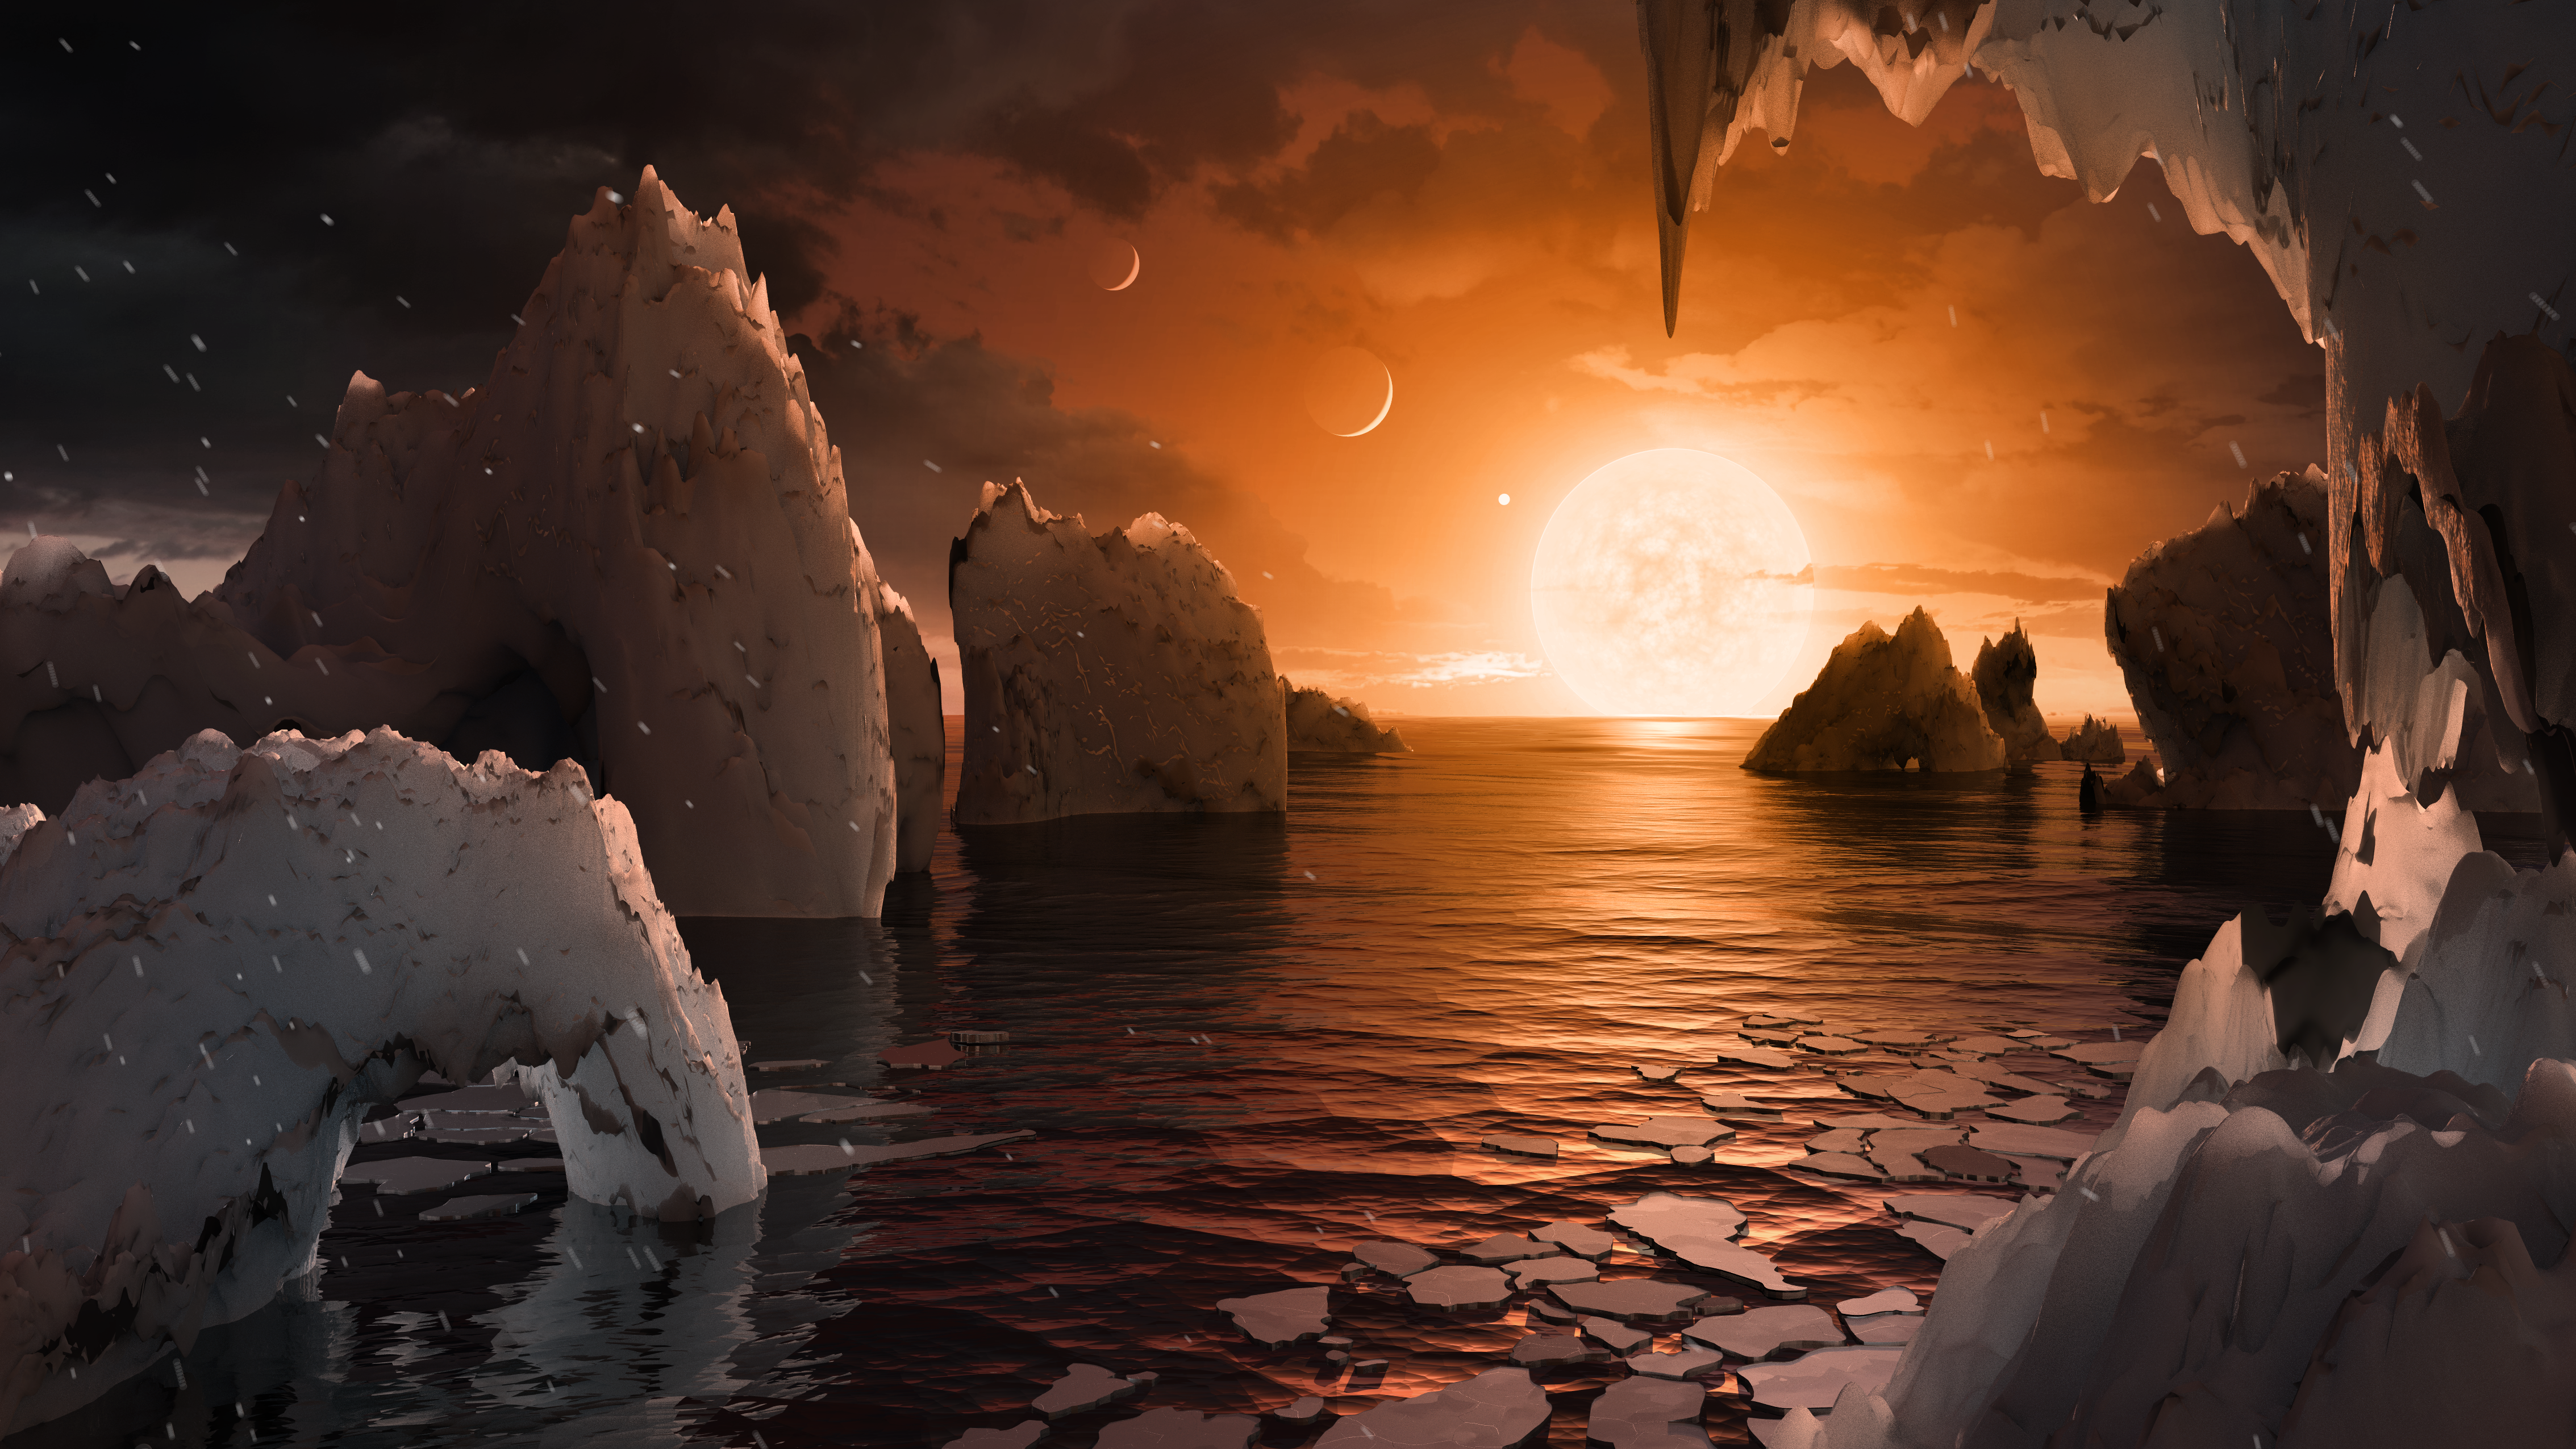 NASA a descoperit un sistem solar plin cu planete asemănătoare Pământului